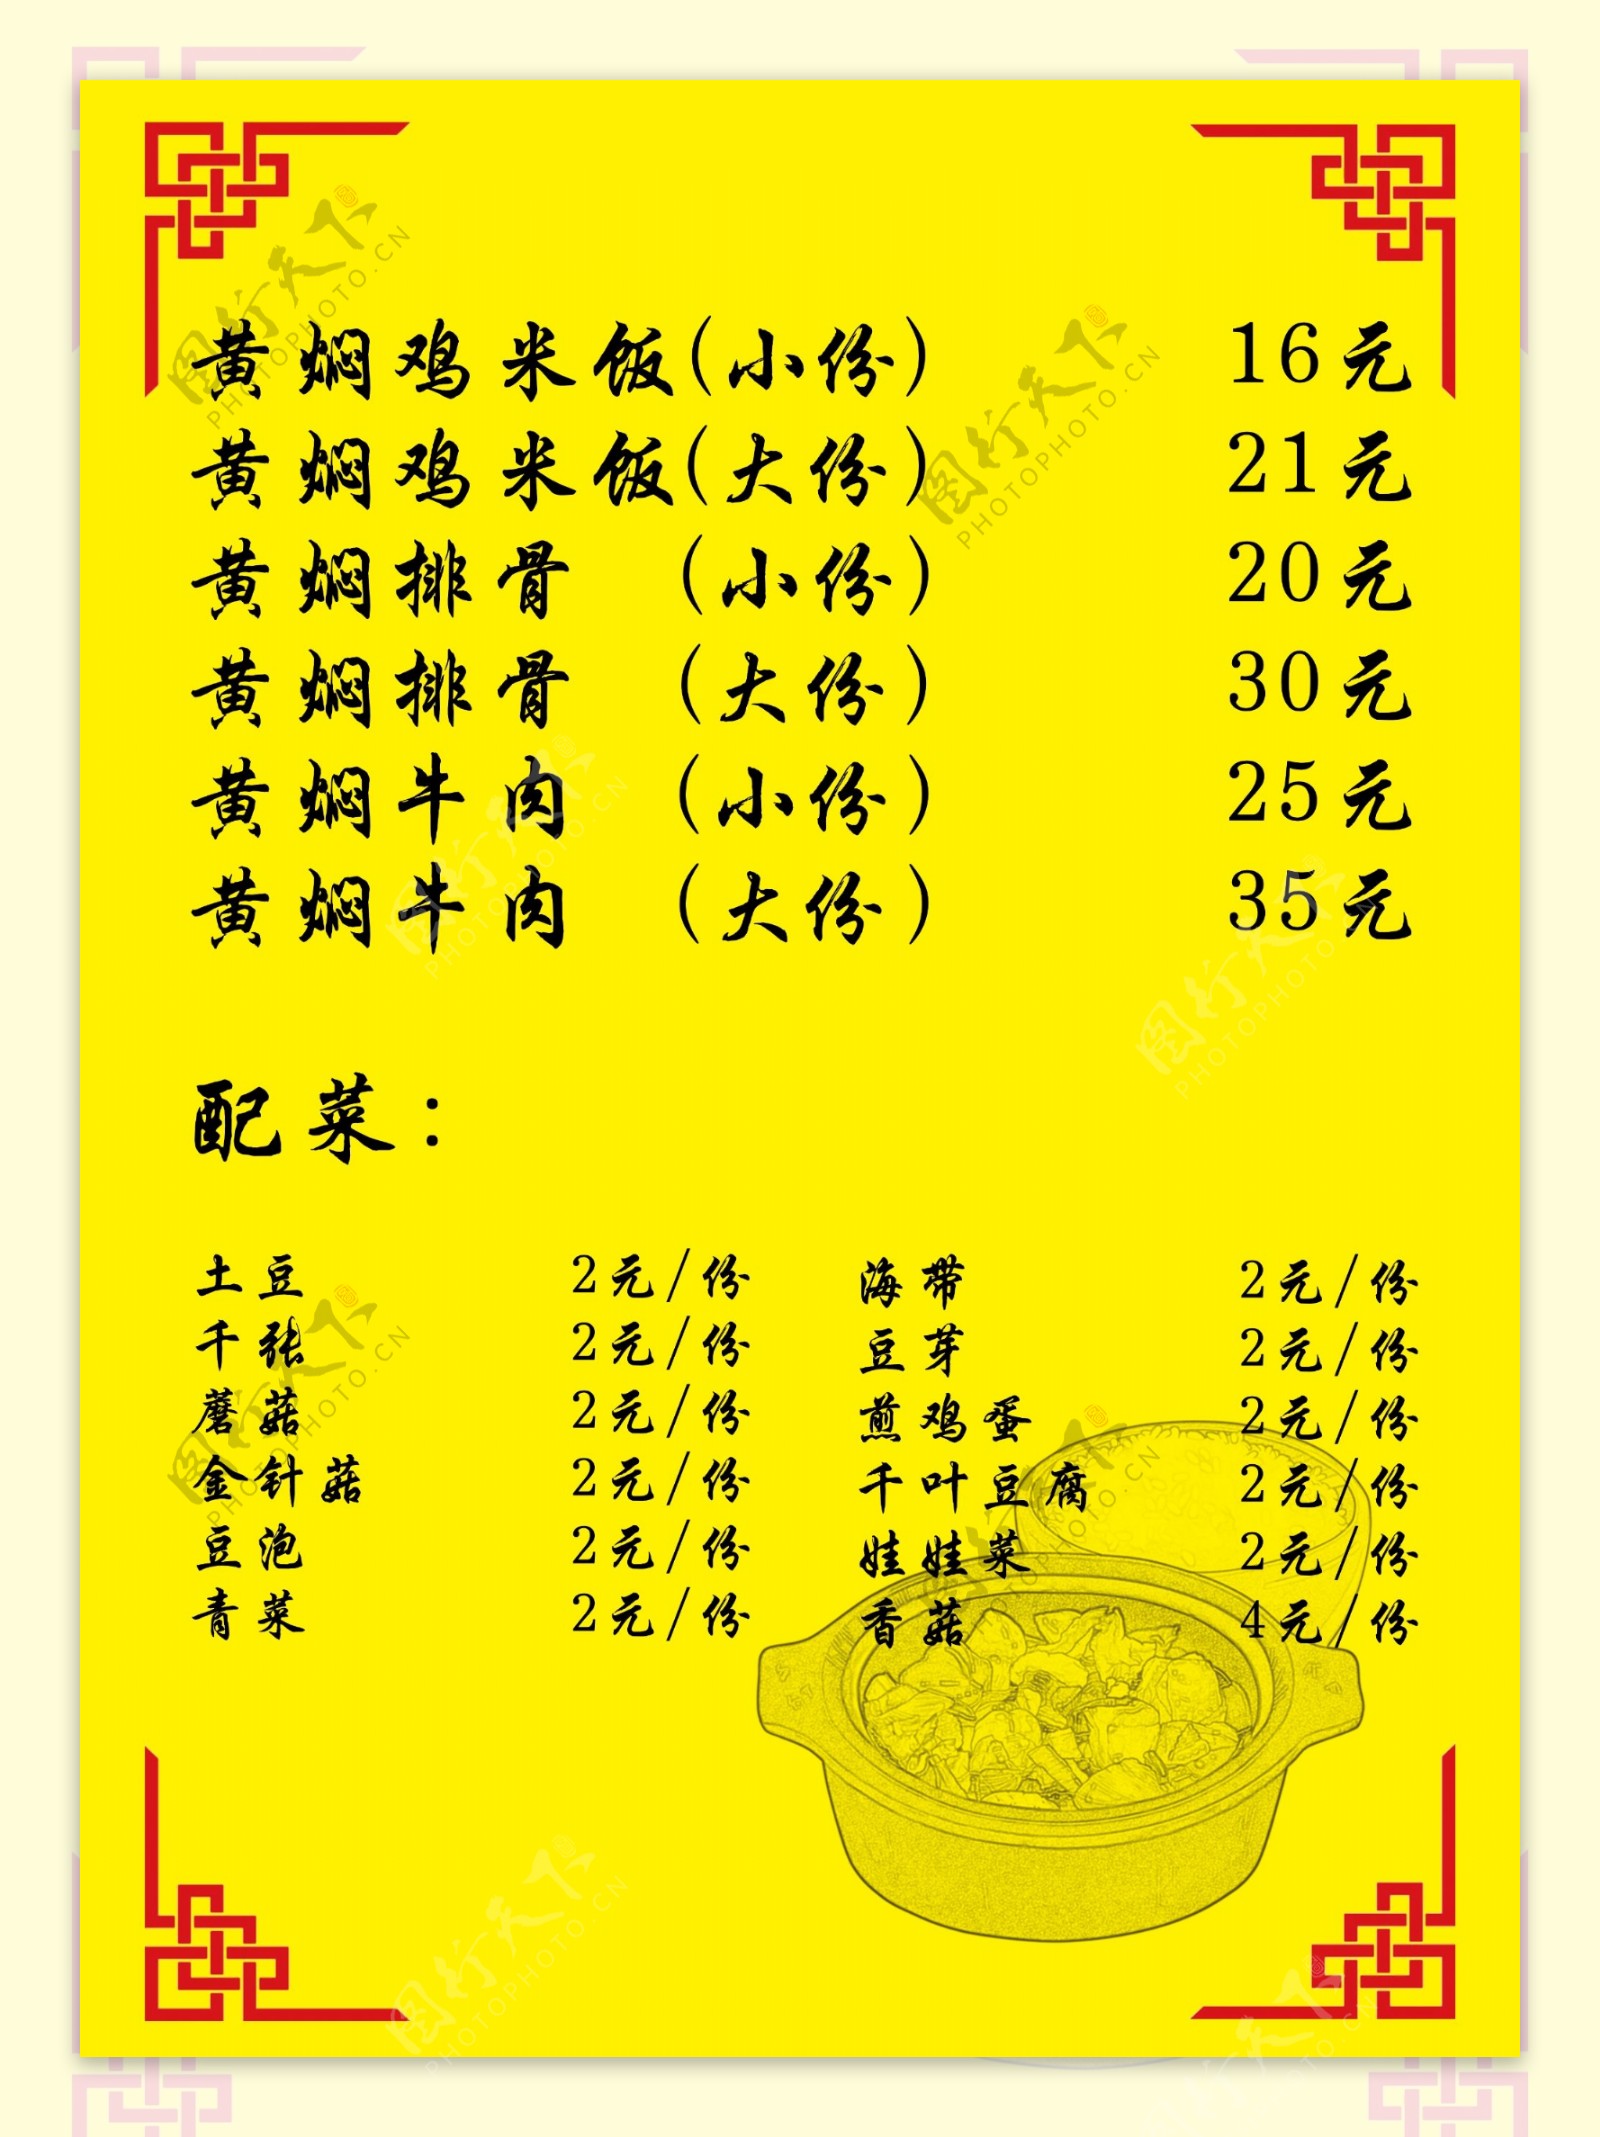 黄焖鸡米饭KT板黄底黑字古典风